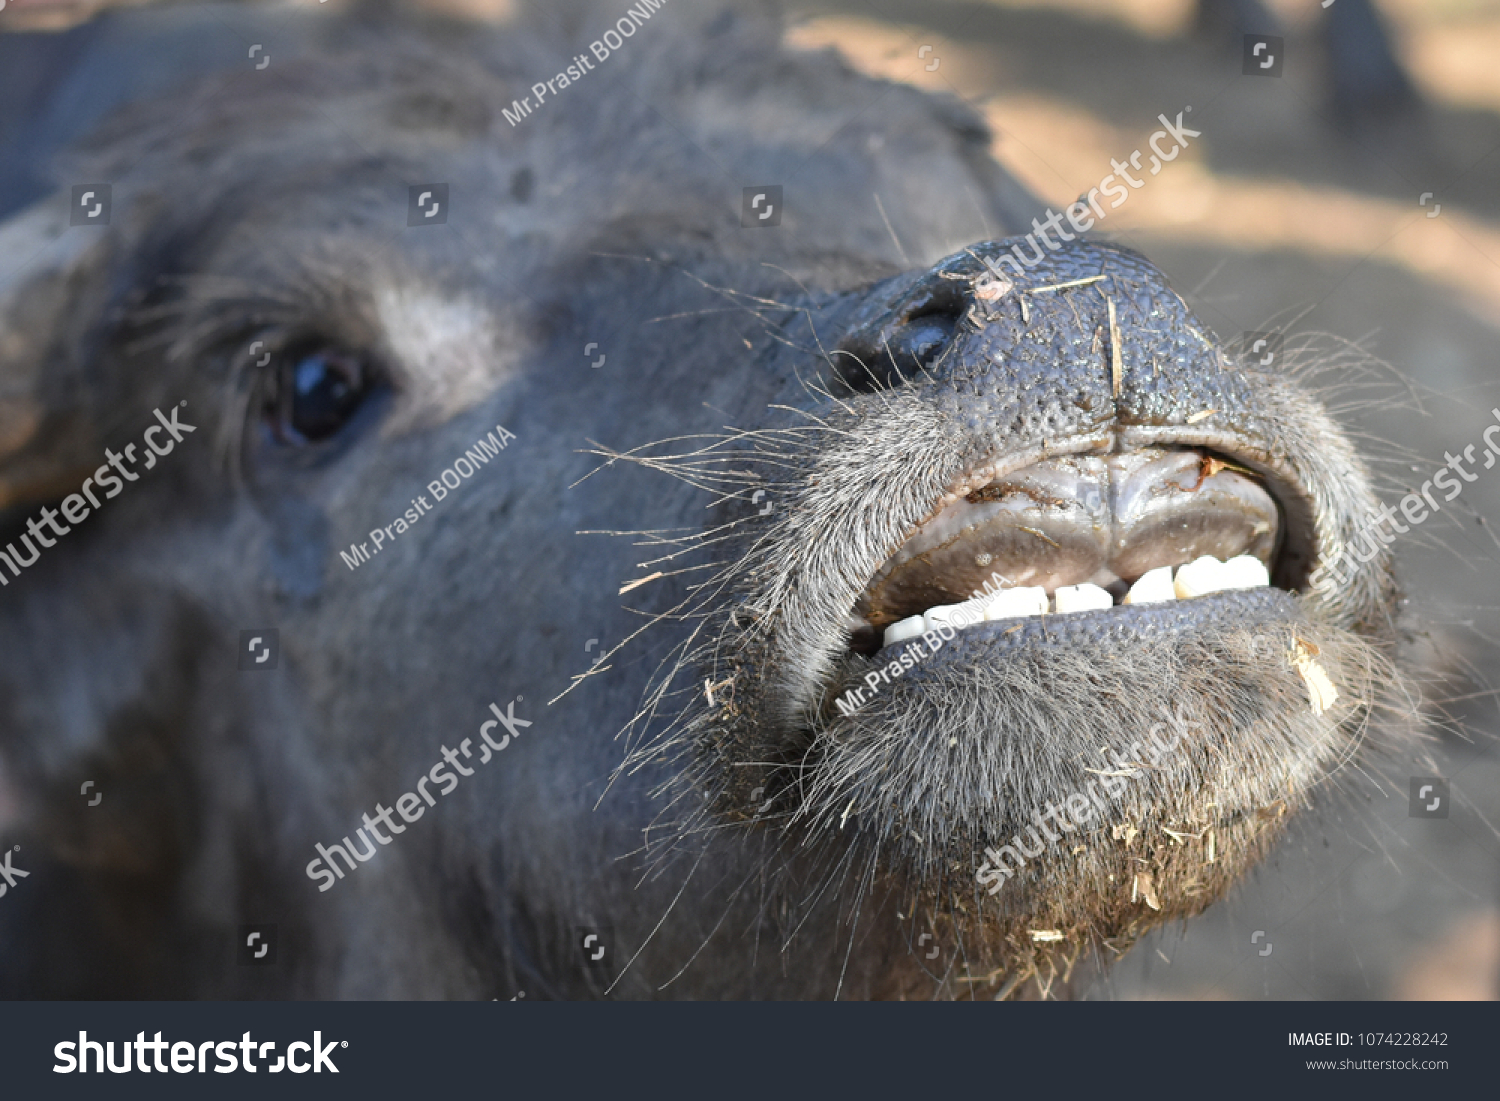 Buffalo smiling Buffalo